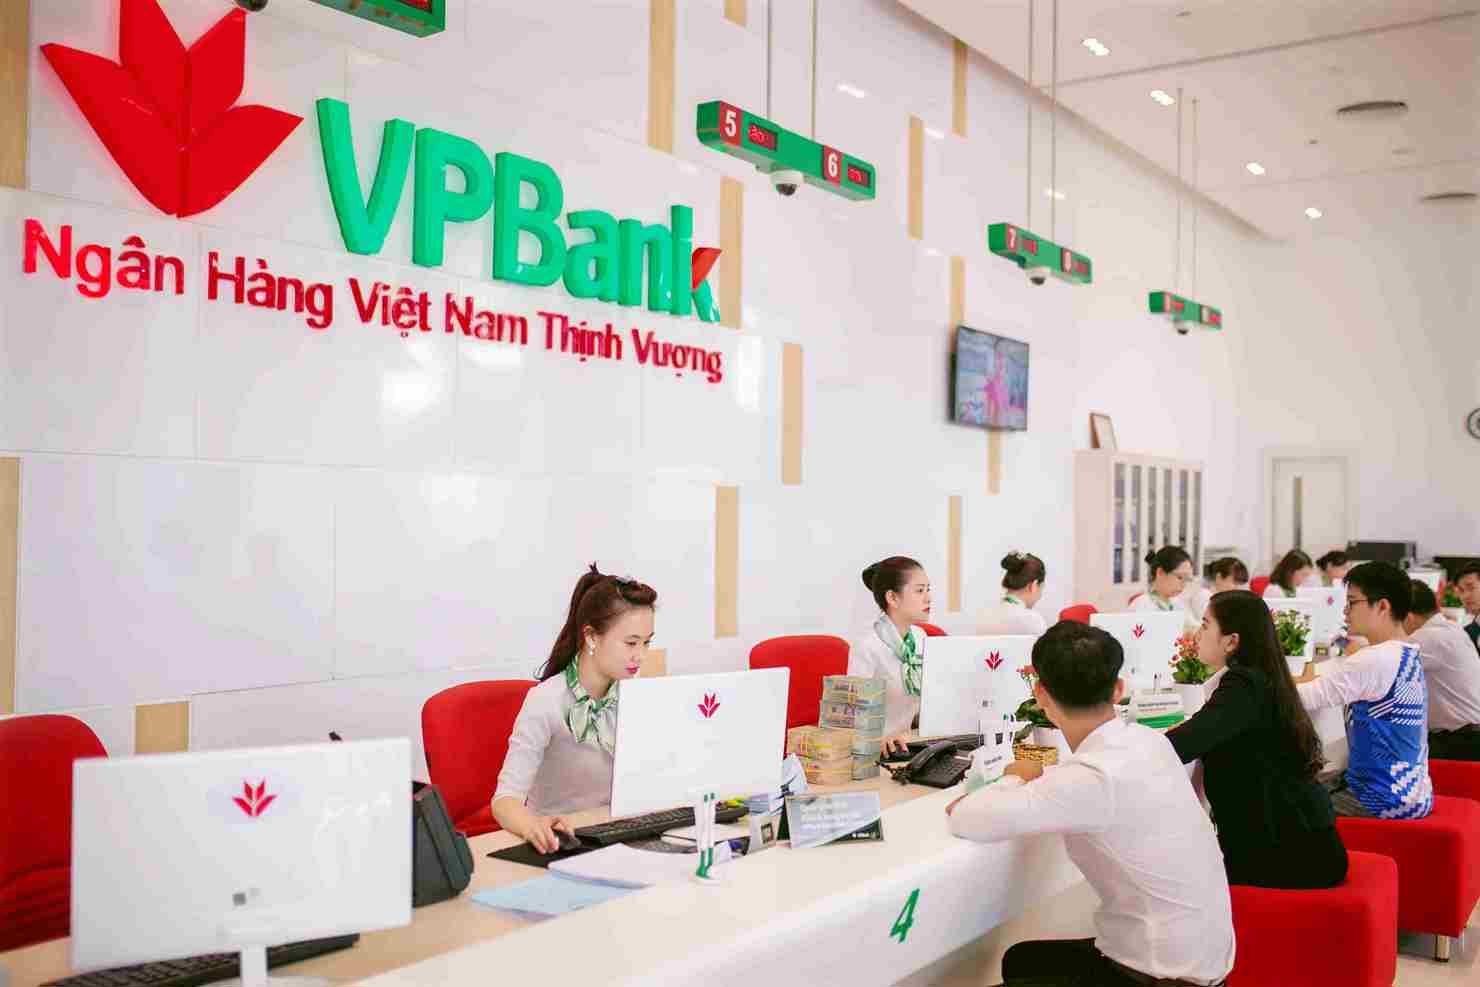 PVBank công bố cáo cáo tài chính quý III/2018, lợi nhuận hợp nhất trước thuế 9 tháng đạt 6.125 tỷ đồng, doanh thu đạt hơn 22.100 tỷ tăng 26% so với cùng kỳ.